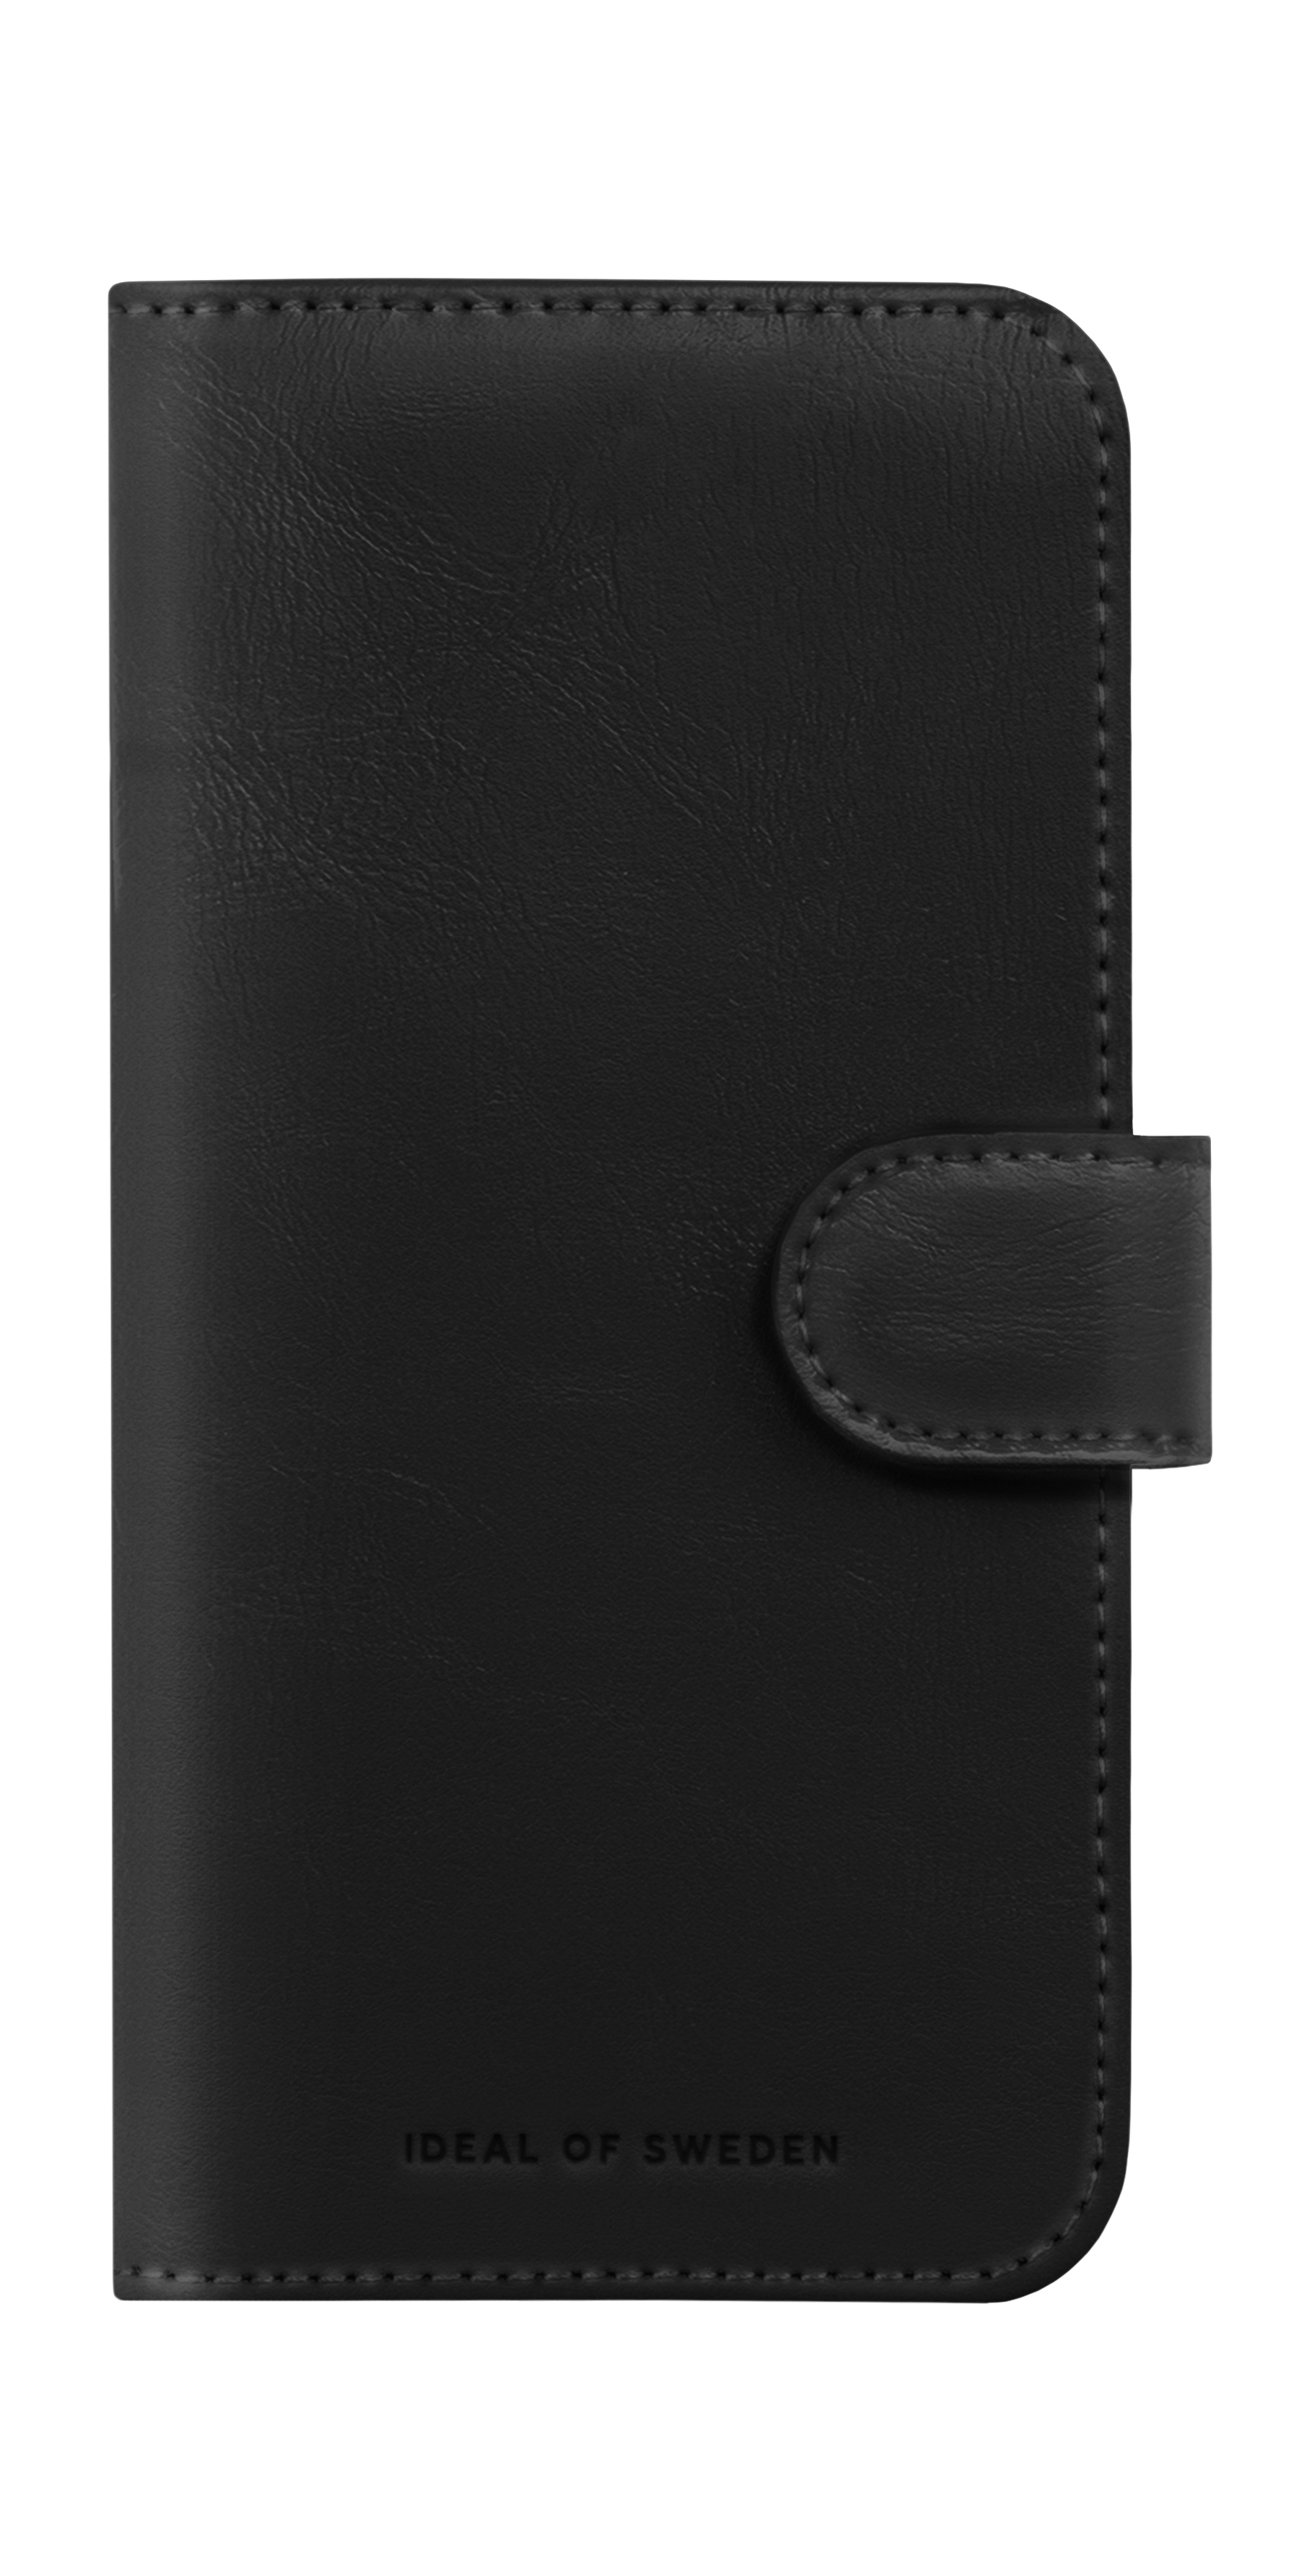 IDEAL OF iPhone 15, SWEDEN Magnet Black Bookcover, Wallet+, Apple